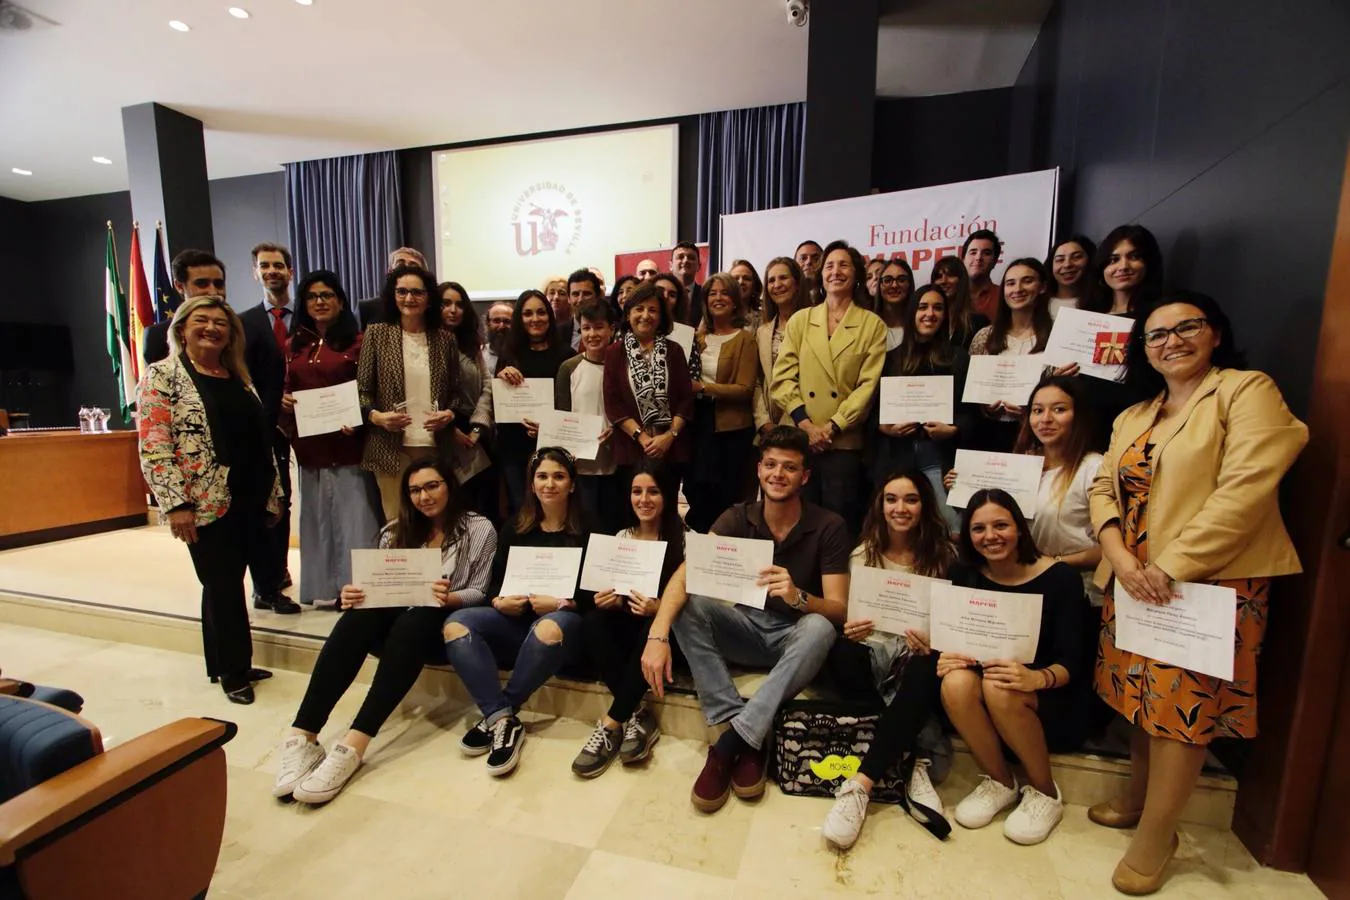 La Infanta Elena, en la entrega de premios del I Campeonato Interuniversitario de bugaMAP en Sevilla